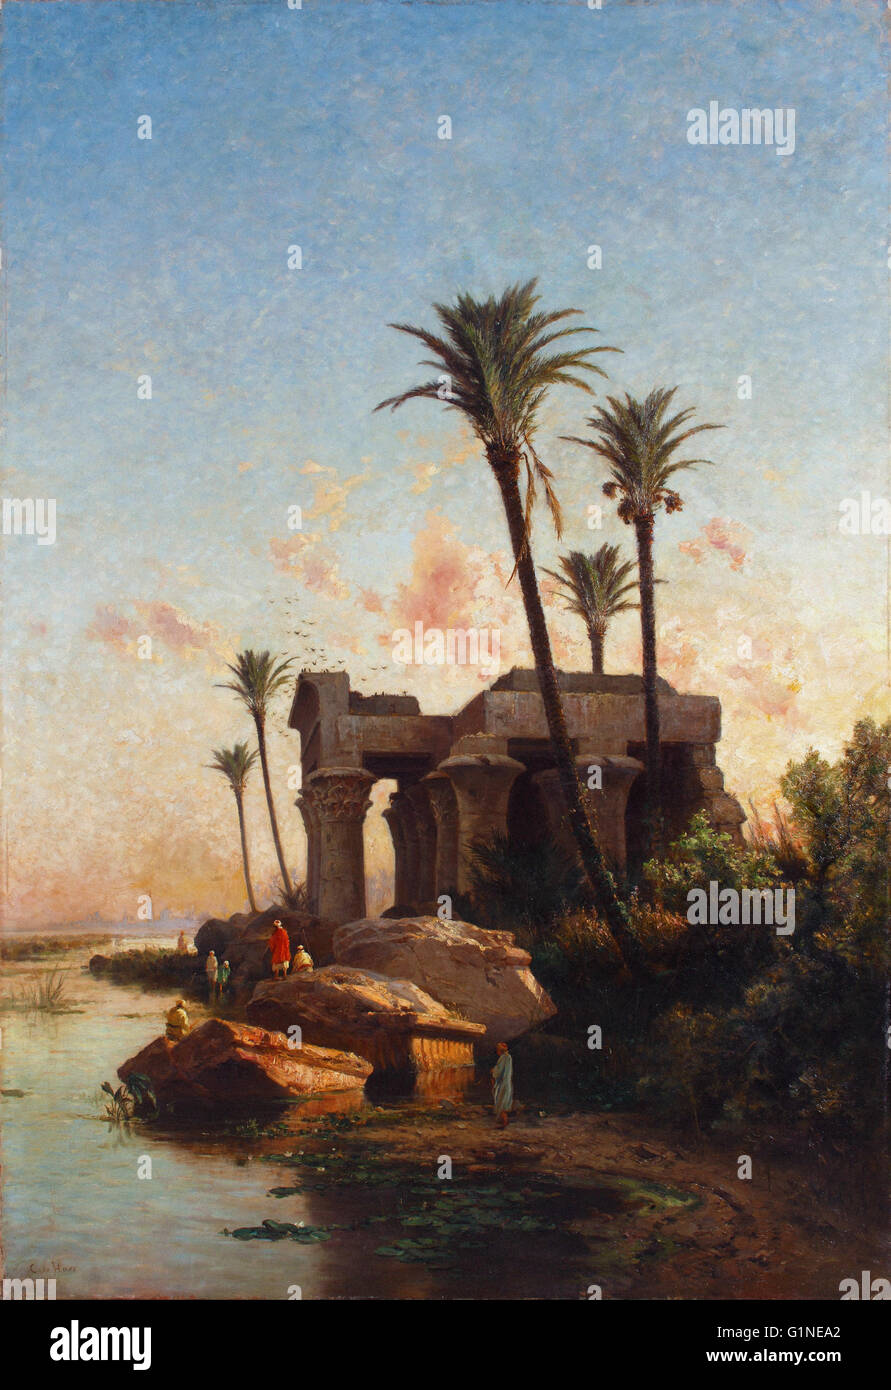 Carlos de Haes - Egypcian Landschaft - Museo del Romanticismo, Madrid Stockfoto